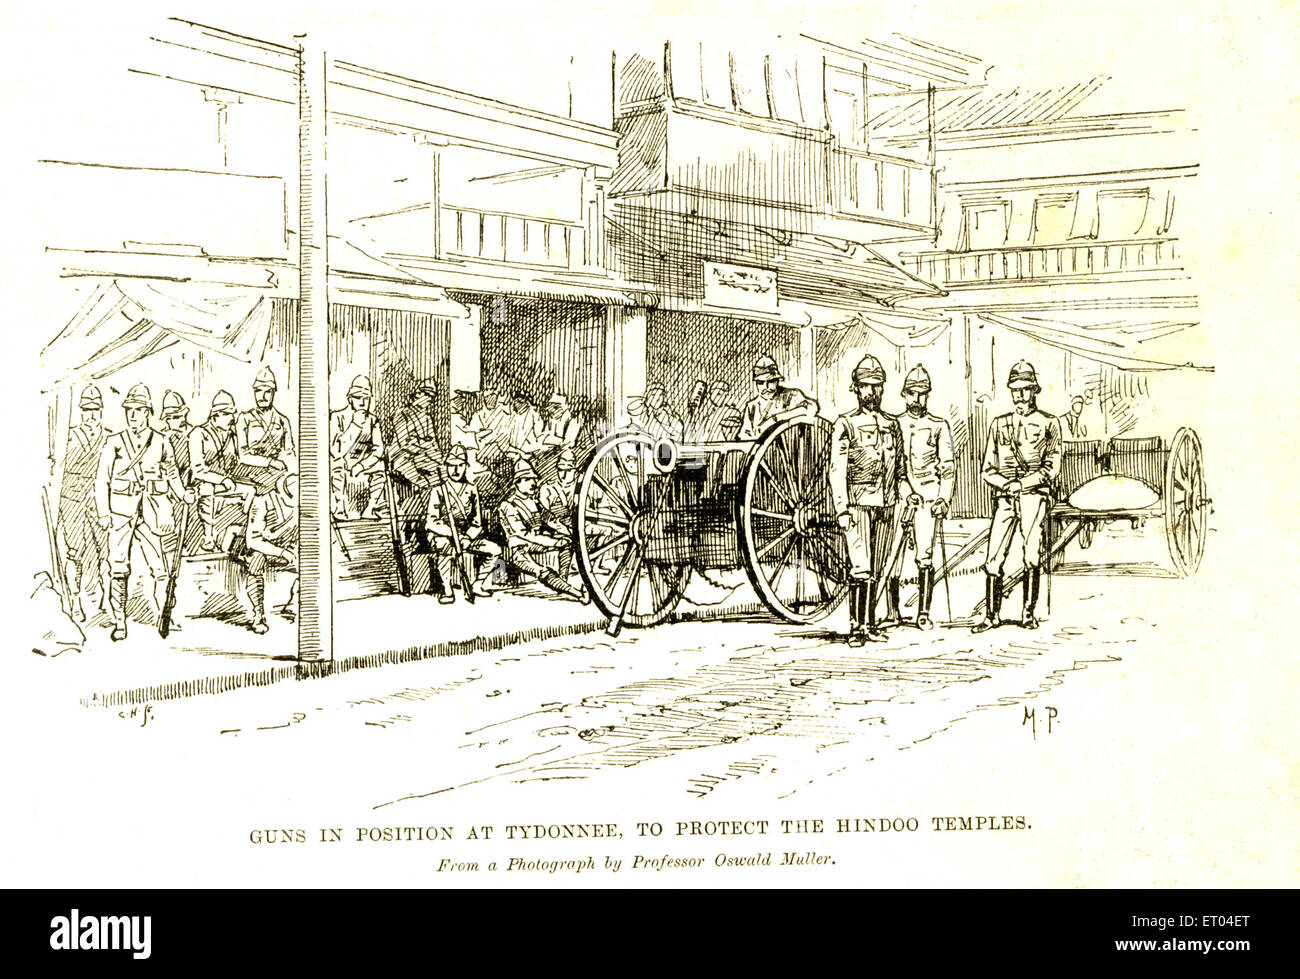 Canons en position à Tydonnee à protéger les temples hindous ; 9 septembre 1893 ; Bombay maintenant Mumbai Maharashtra ; Inde ; Banque D'Images